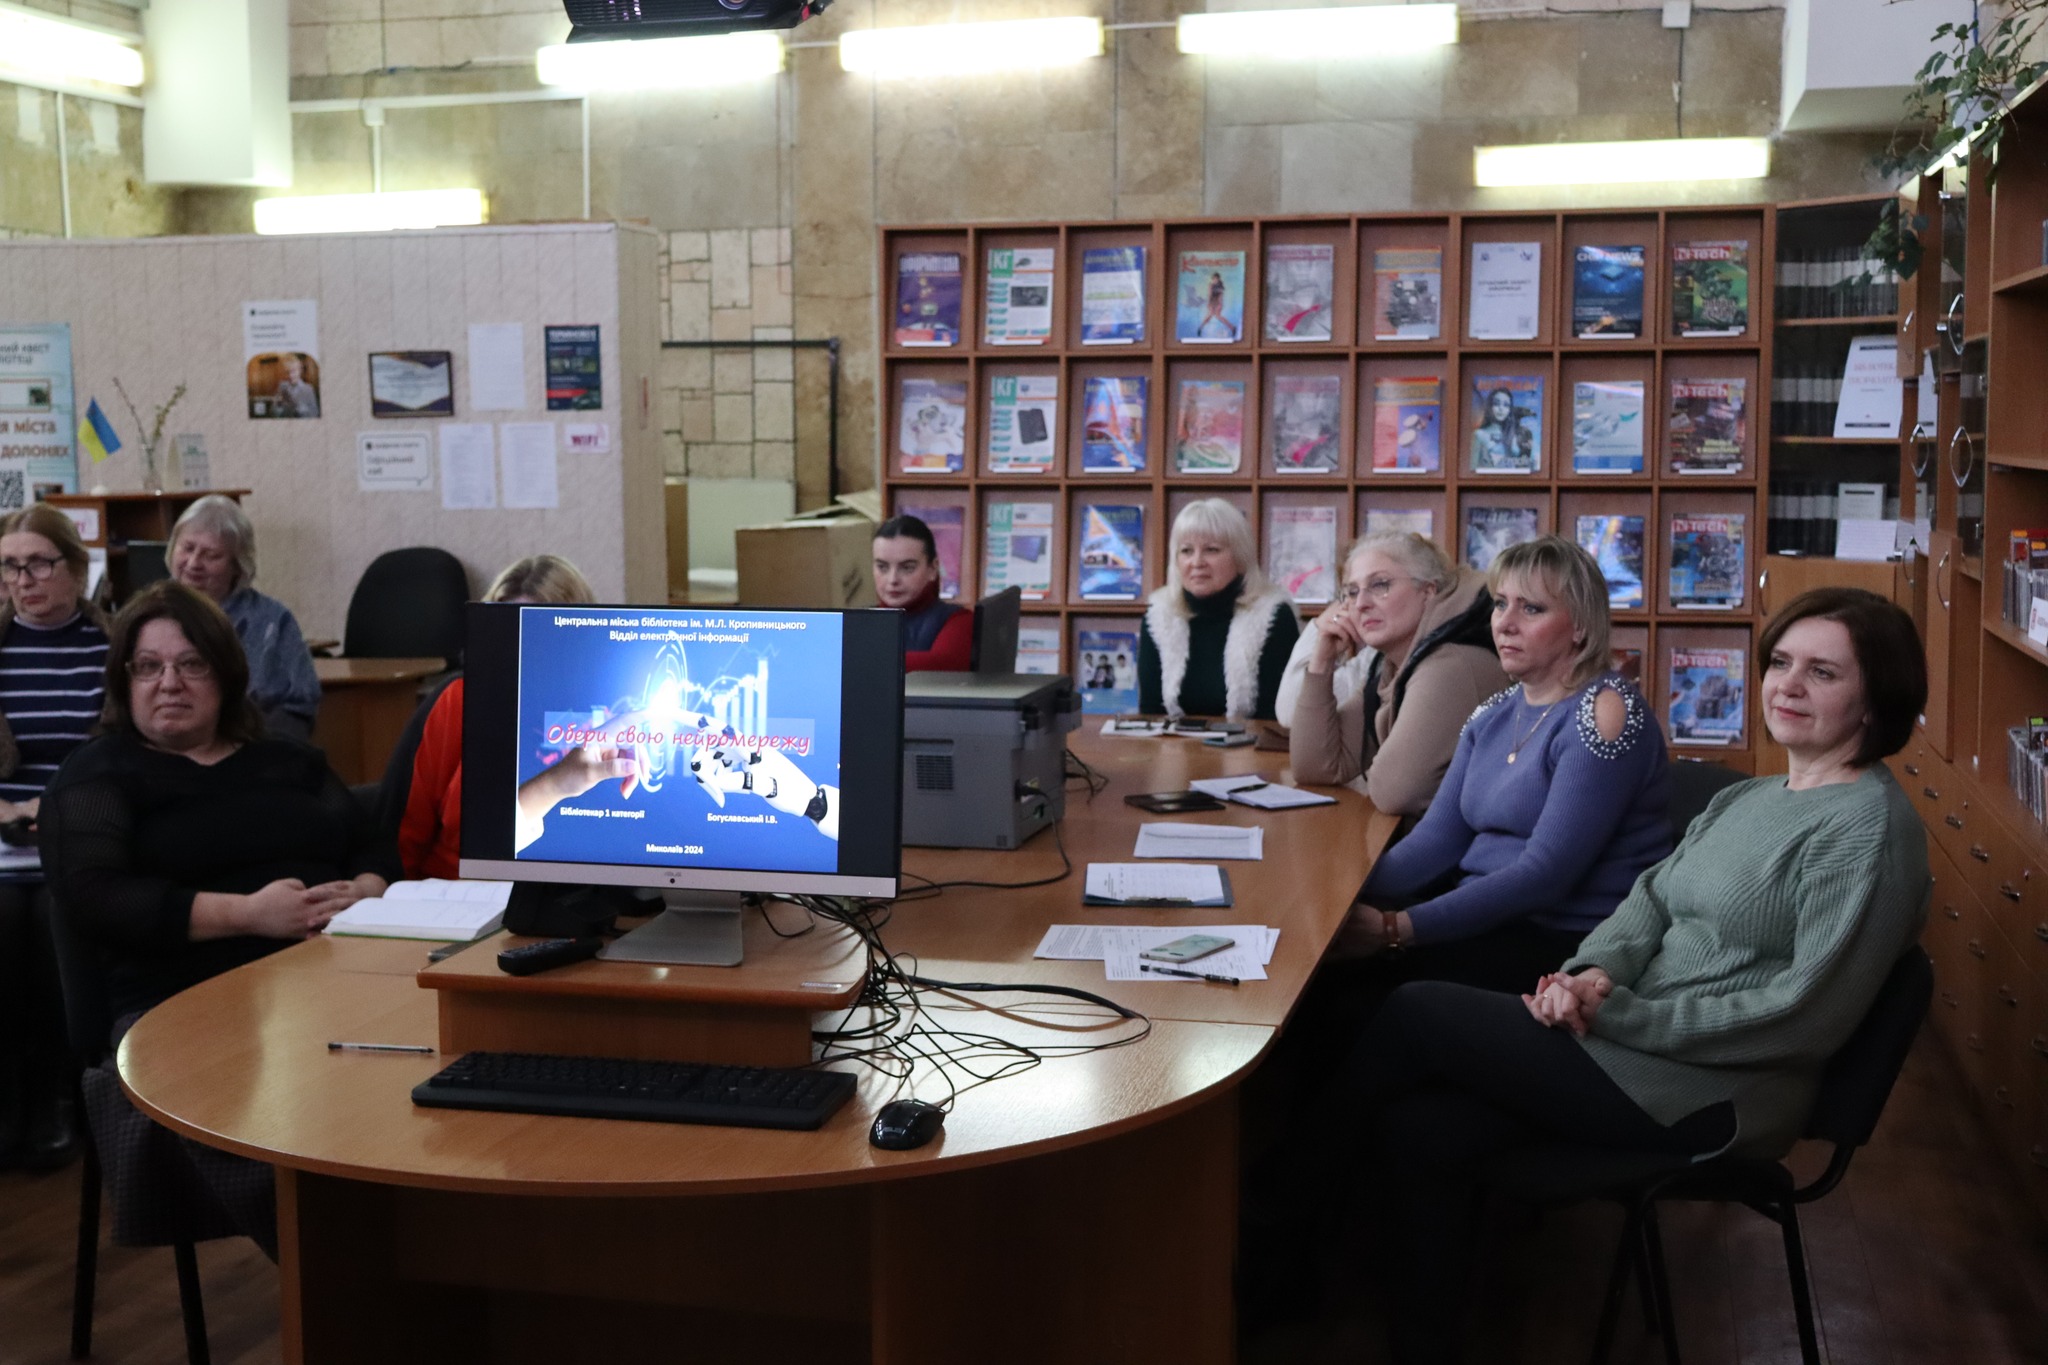 Бібліотекарі  відділу електронної інформації ЦМБ імені Марка Лукича Кропивницького запросили своїх колег з бібліотек-філій на майстер-клас по штучному інтелекту